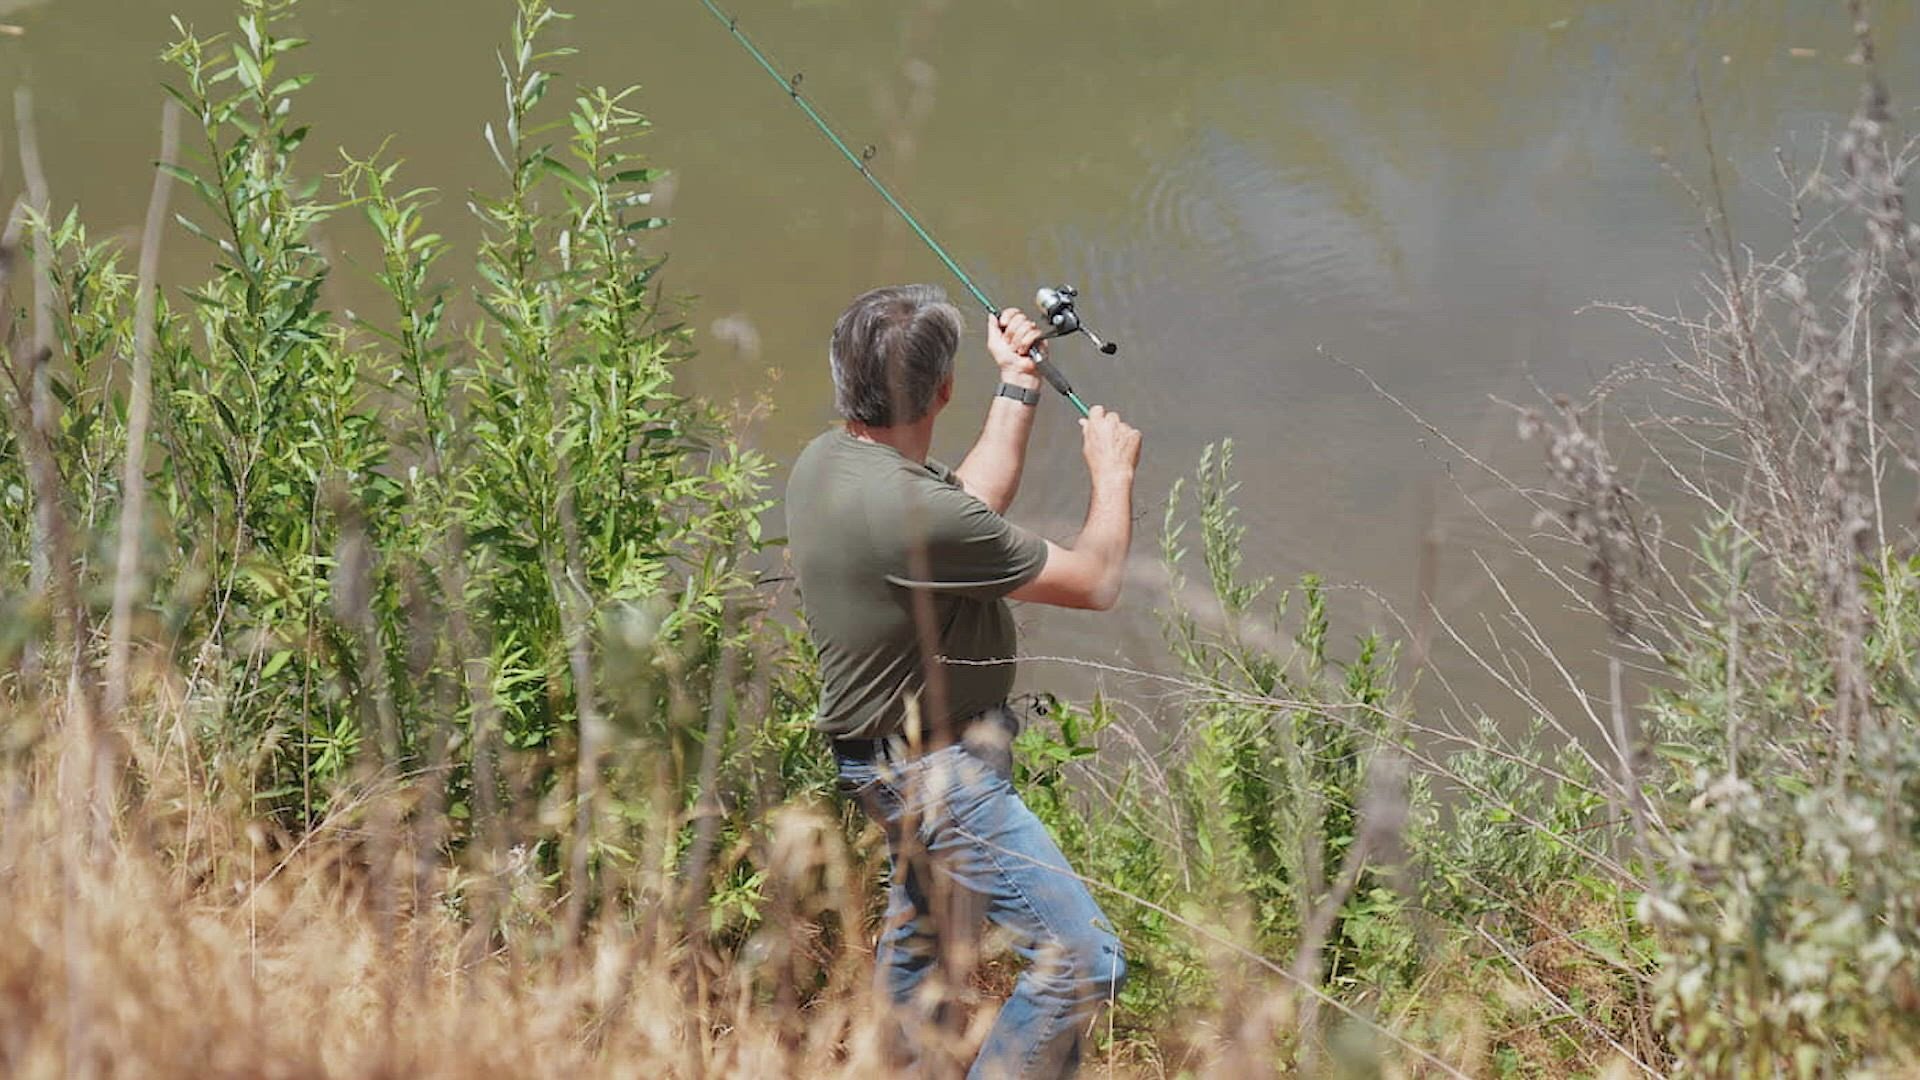 John Fishing